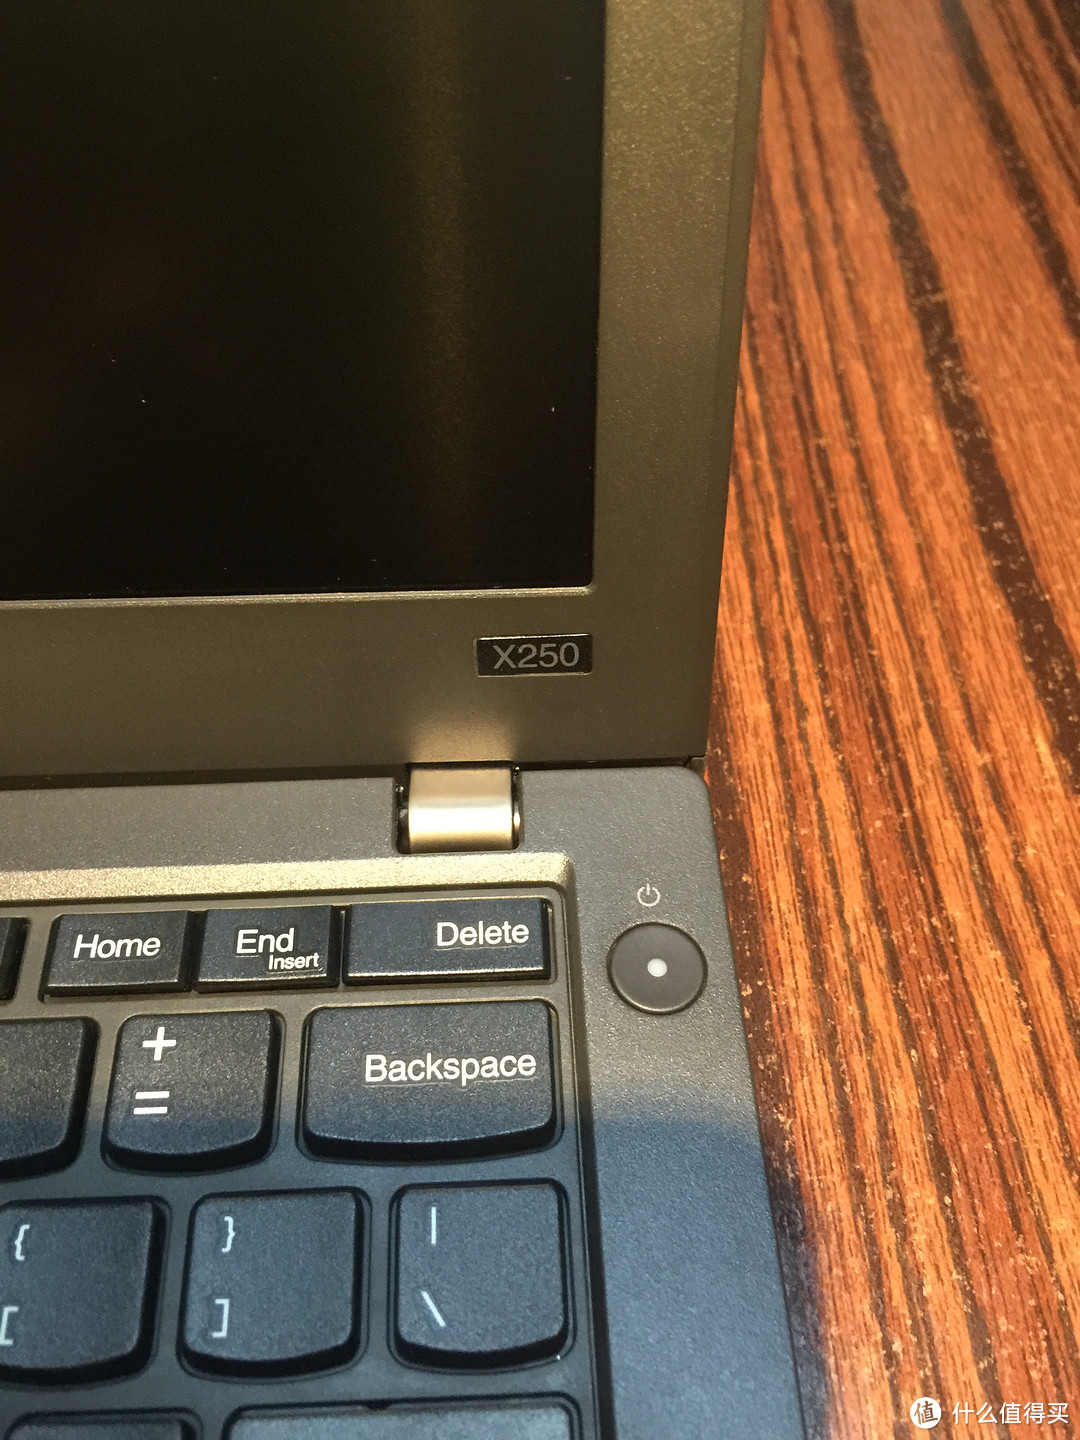 继E450后再战—ThinkPad x250 及加装SSD